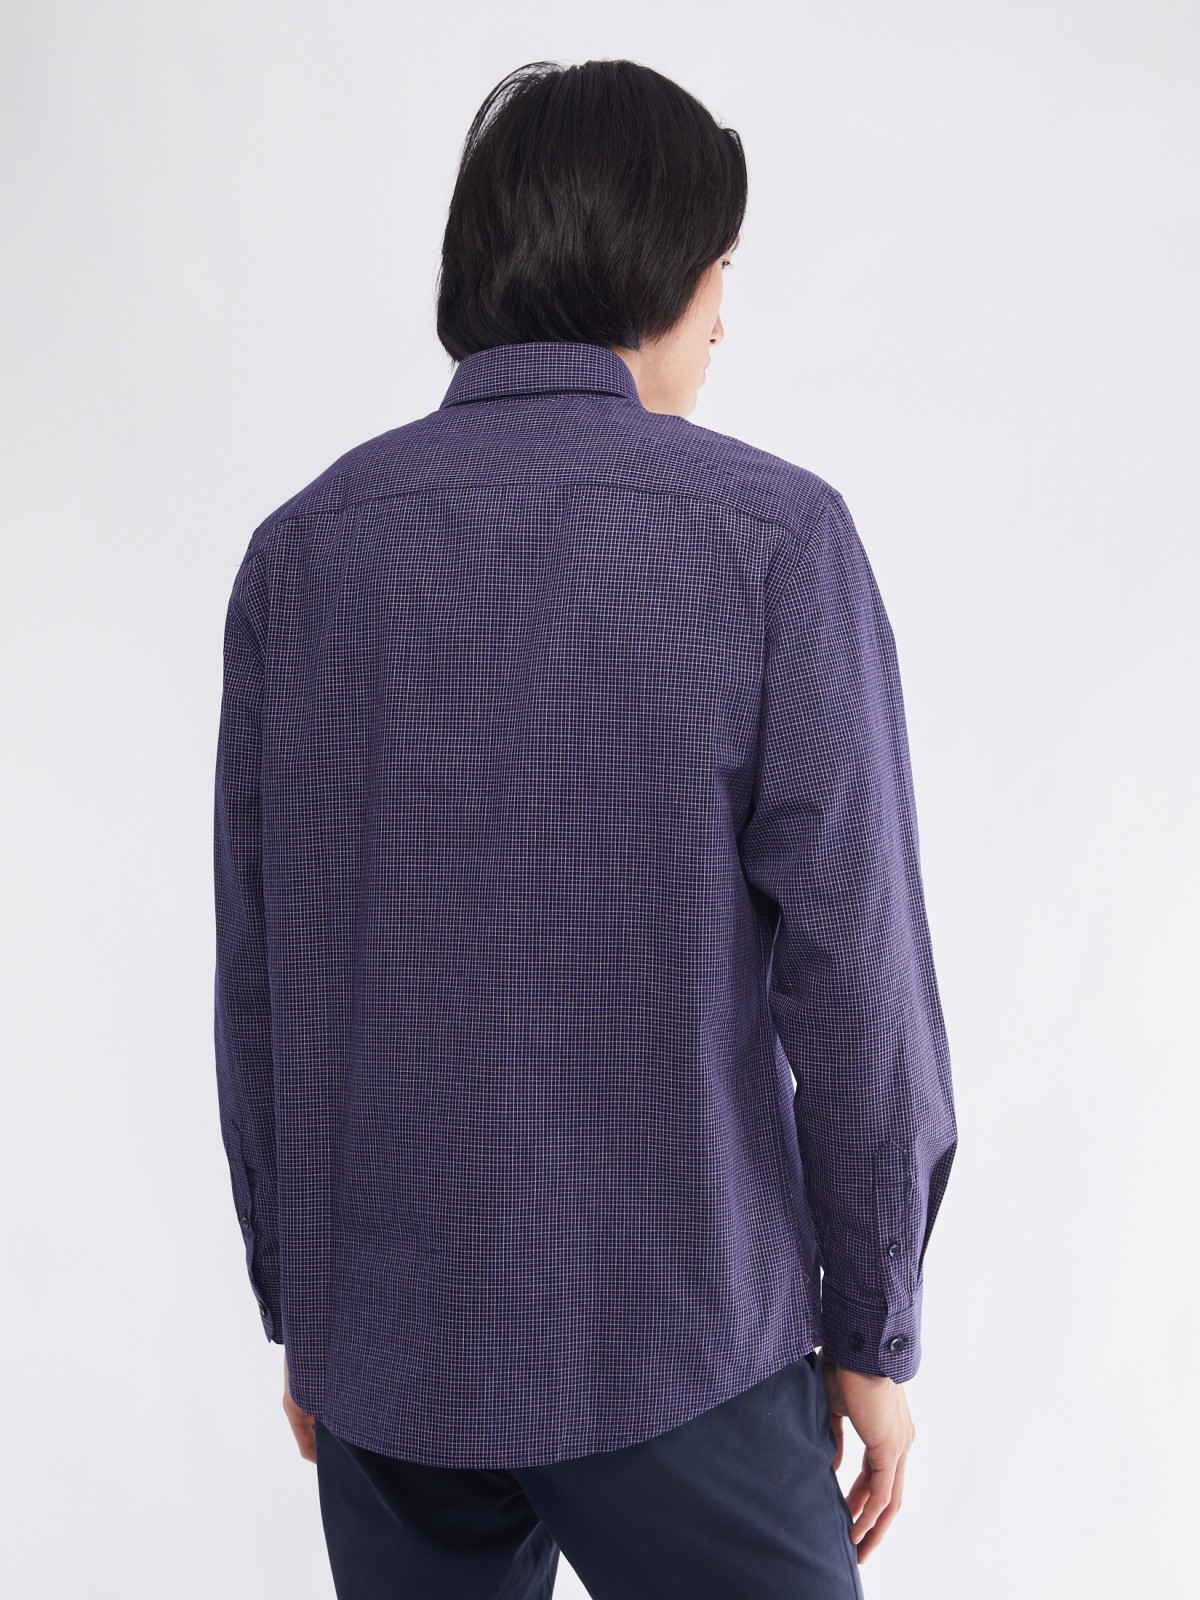 Офисная рубашка прямого силуэта с узором в клетку zolla 01411217Y022, цвет фиолетовый, размер M - фото 6